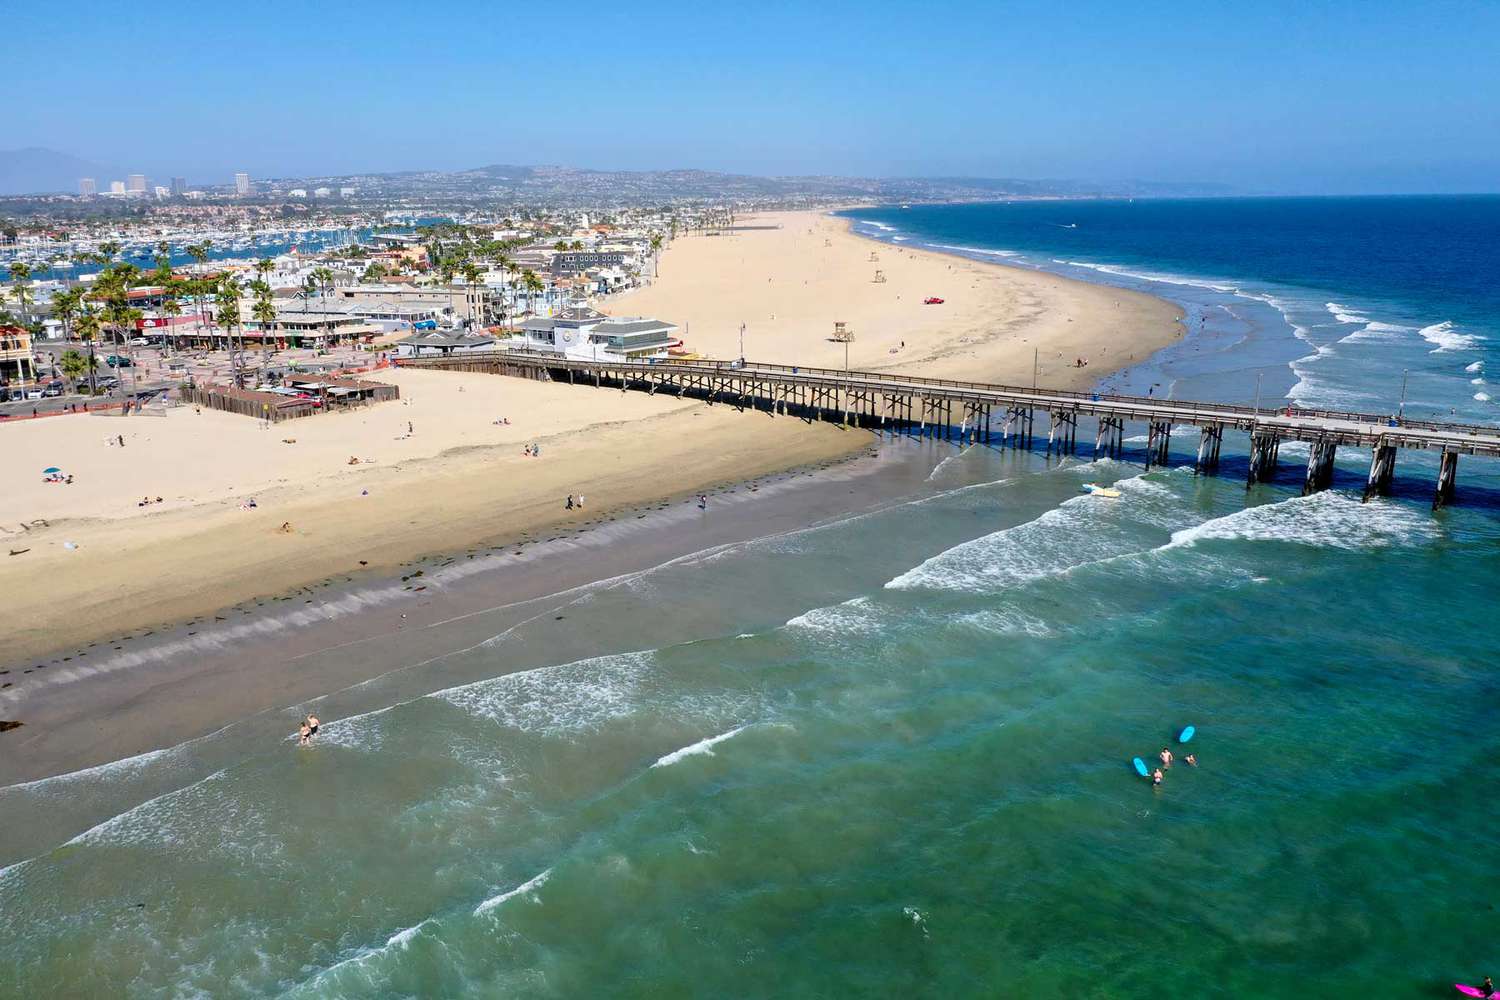 Une vue aérienne de quelques surfeurs et amateurs de plage profitant d'une belle journée à la plage malgré la fermeture ferme du gouverneur Gavin Newsoms, qui est toujours en place à Newport Beach, Californie, le 4 mai 2020.